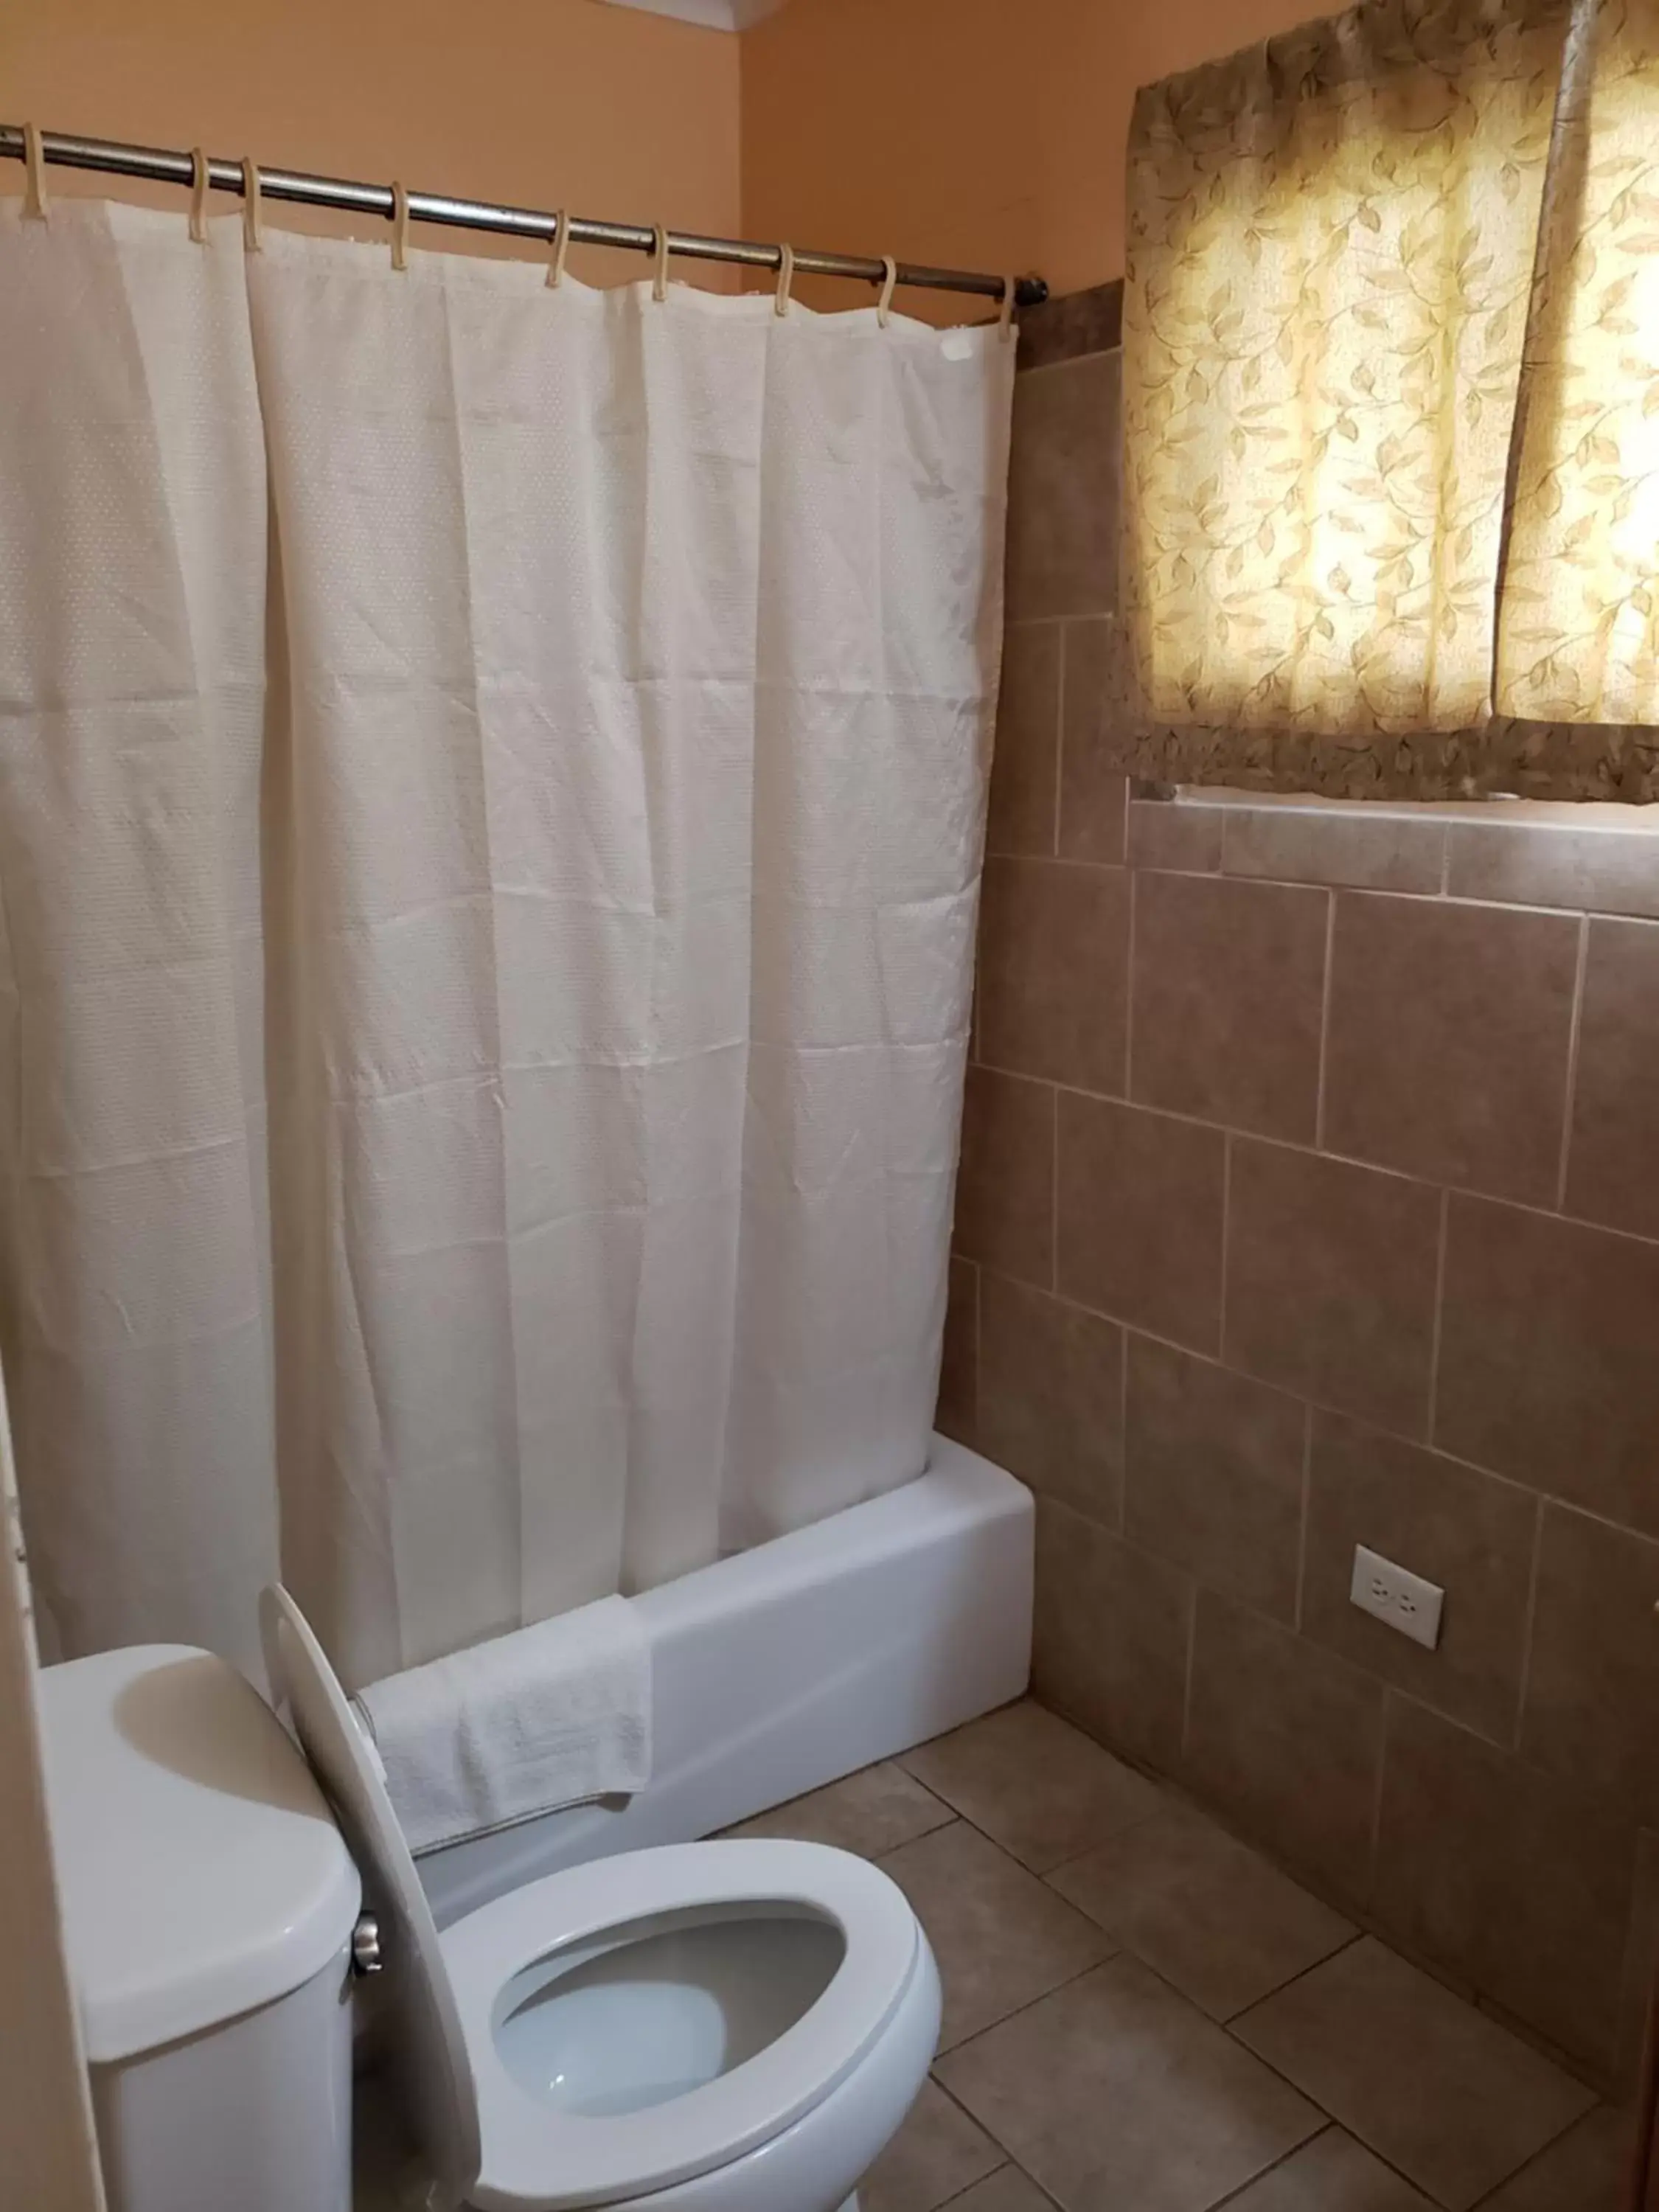 Shower, Bathroom in Encino Motel